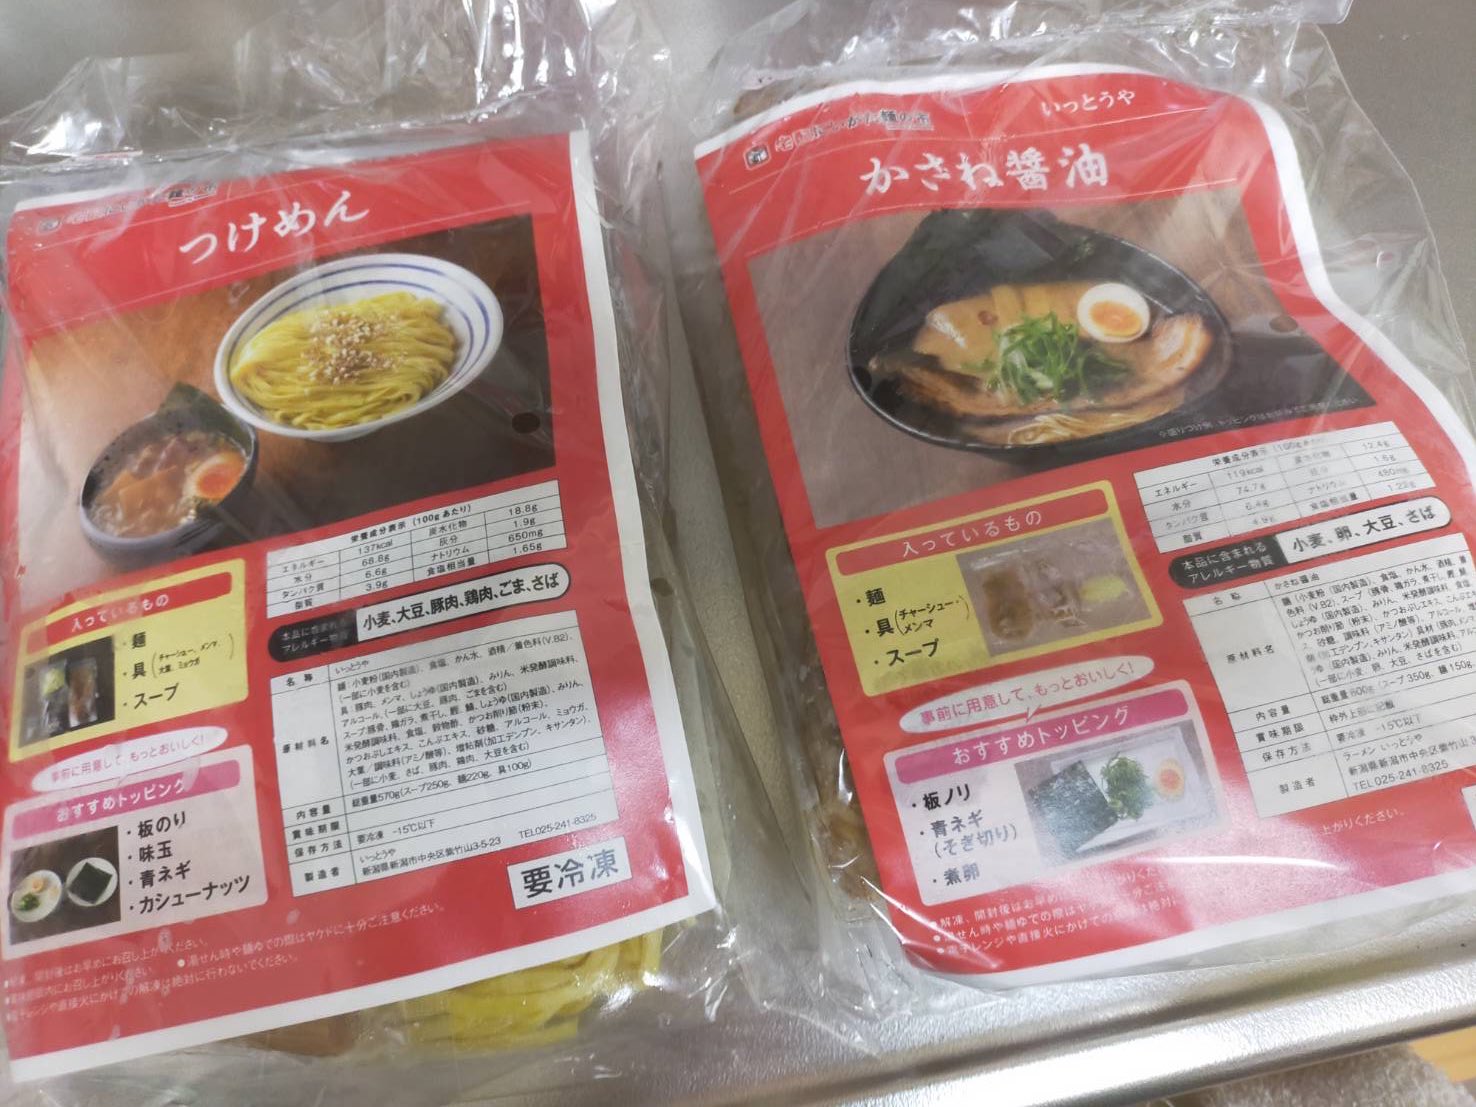 宅配 にいがた麺の市 (@niigata_menno1) / Twitter